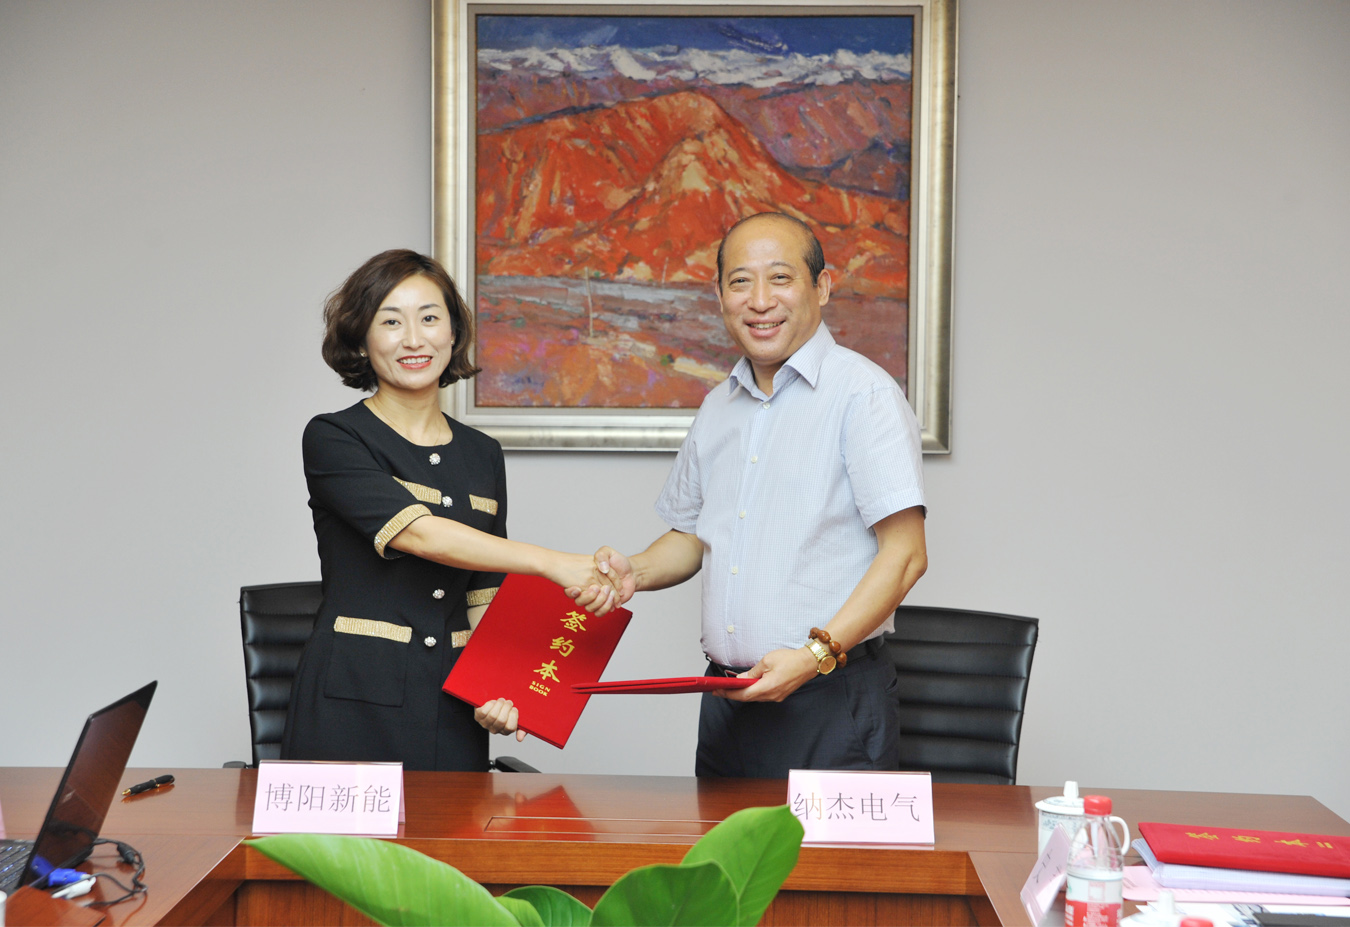 上海电气20MW分布式光伏发电项目合作签约圆满举行